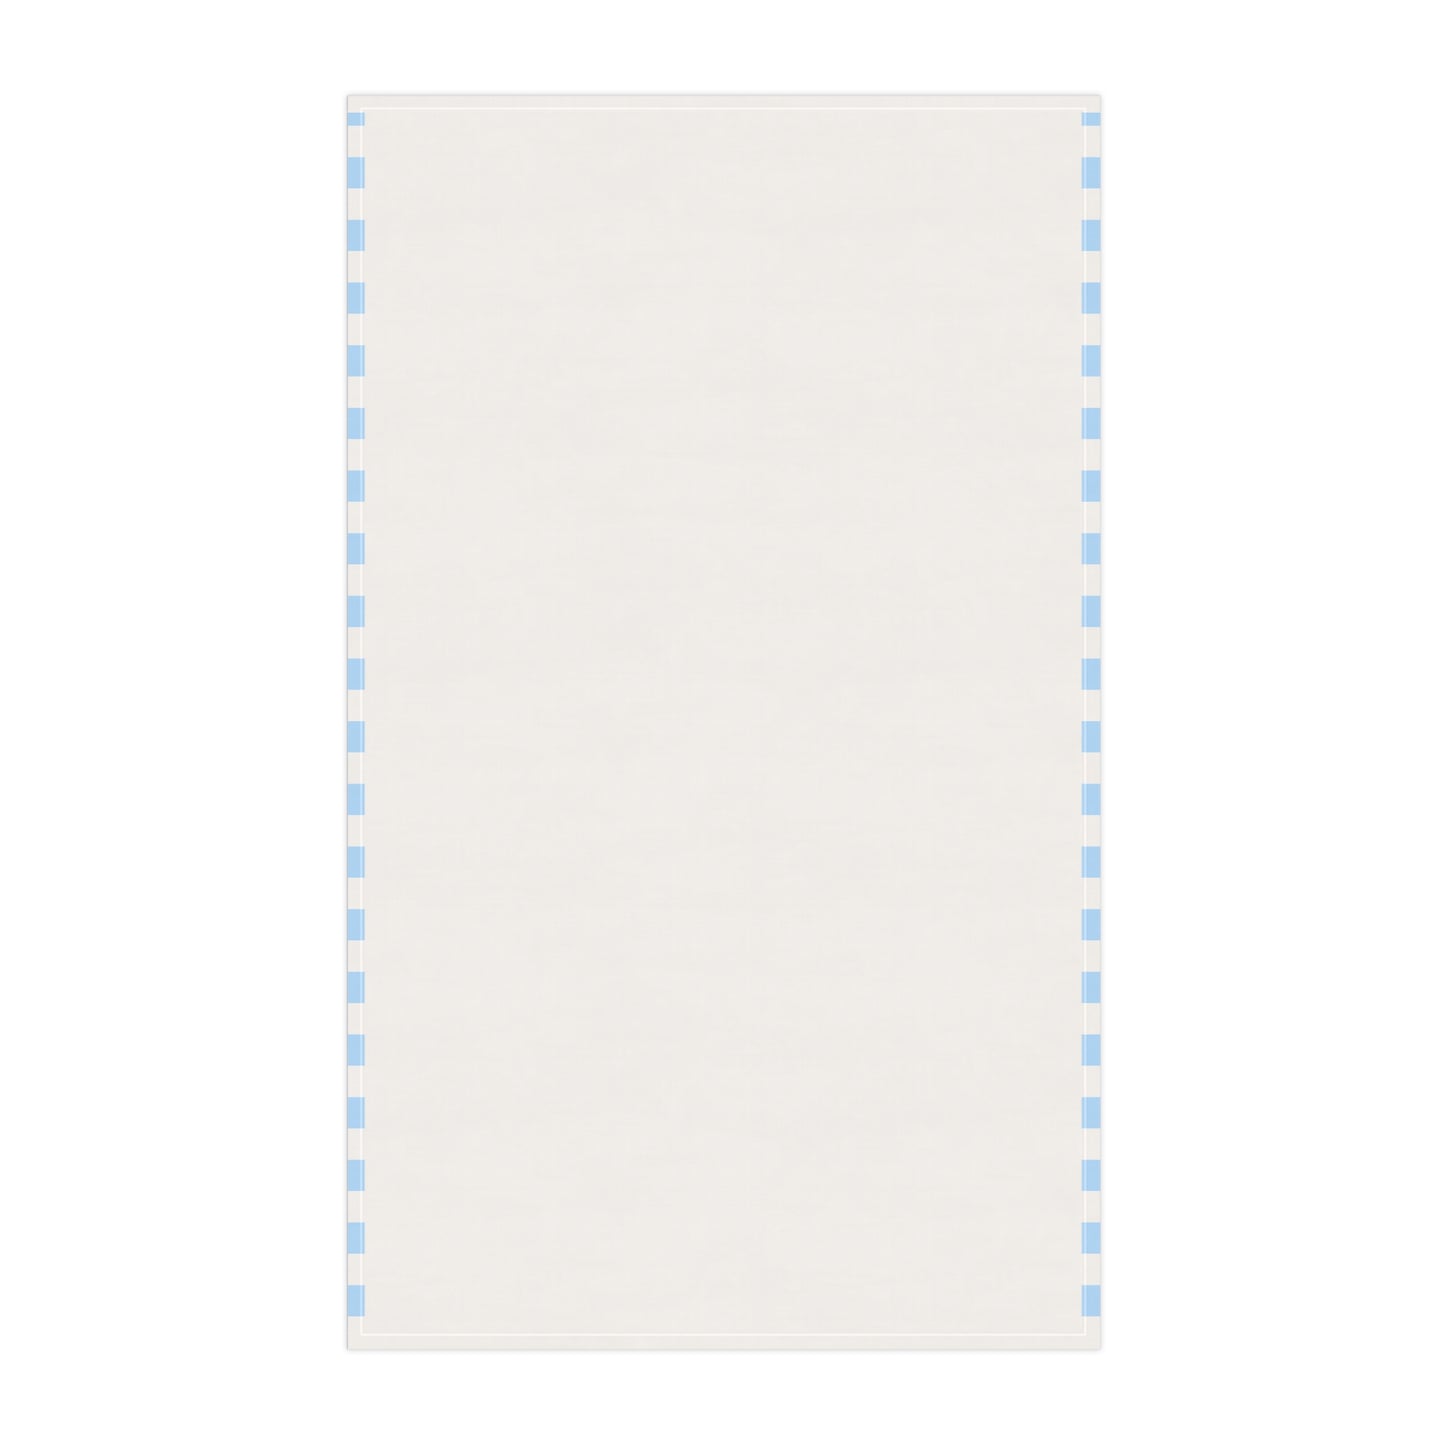 Nuthatch Bird Art Kitchen Towel Blue White 18" × 30"